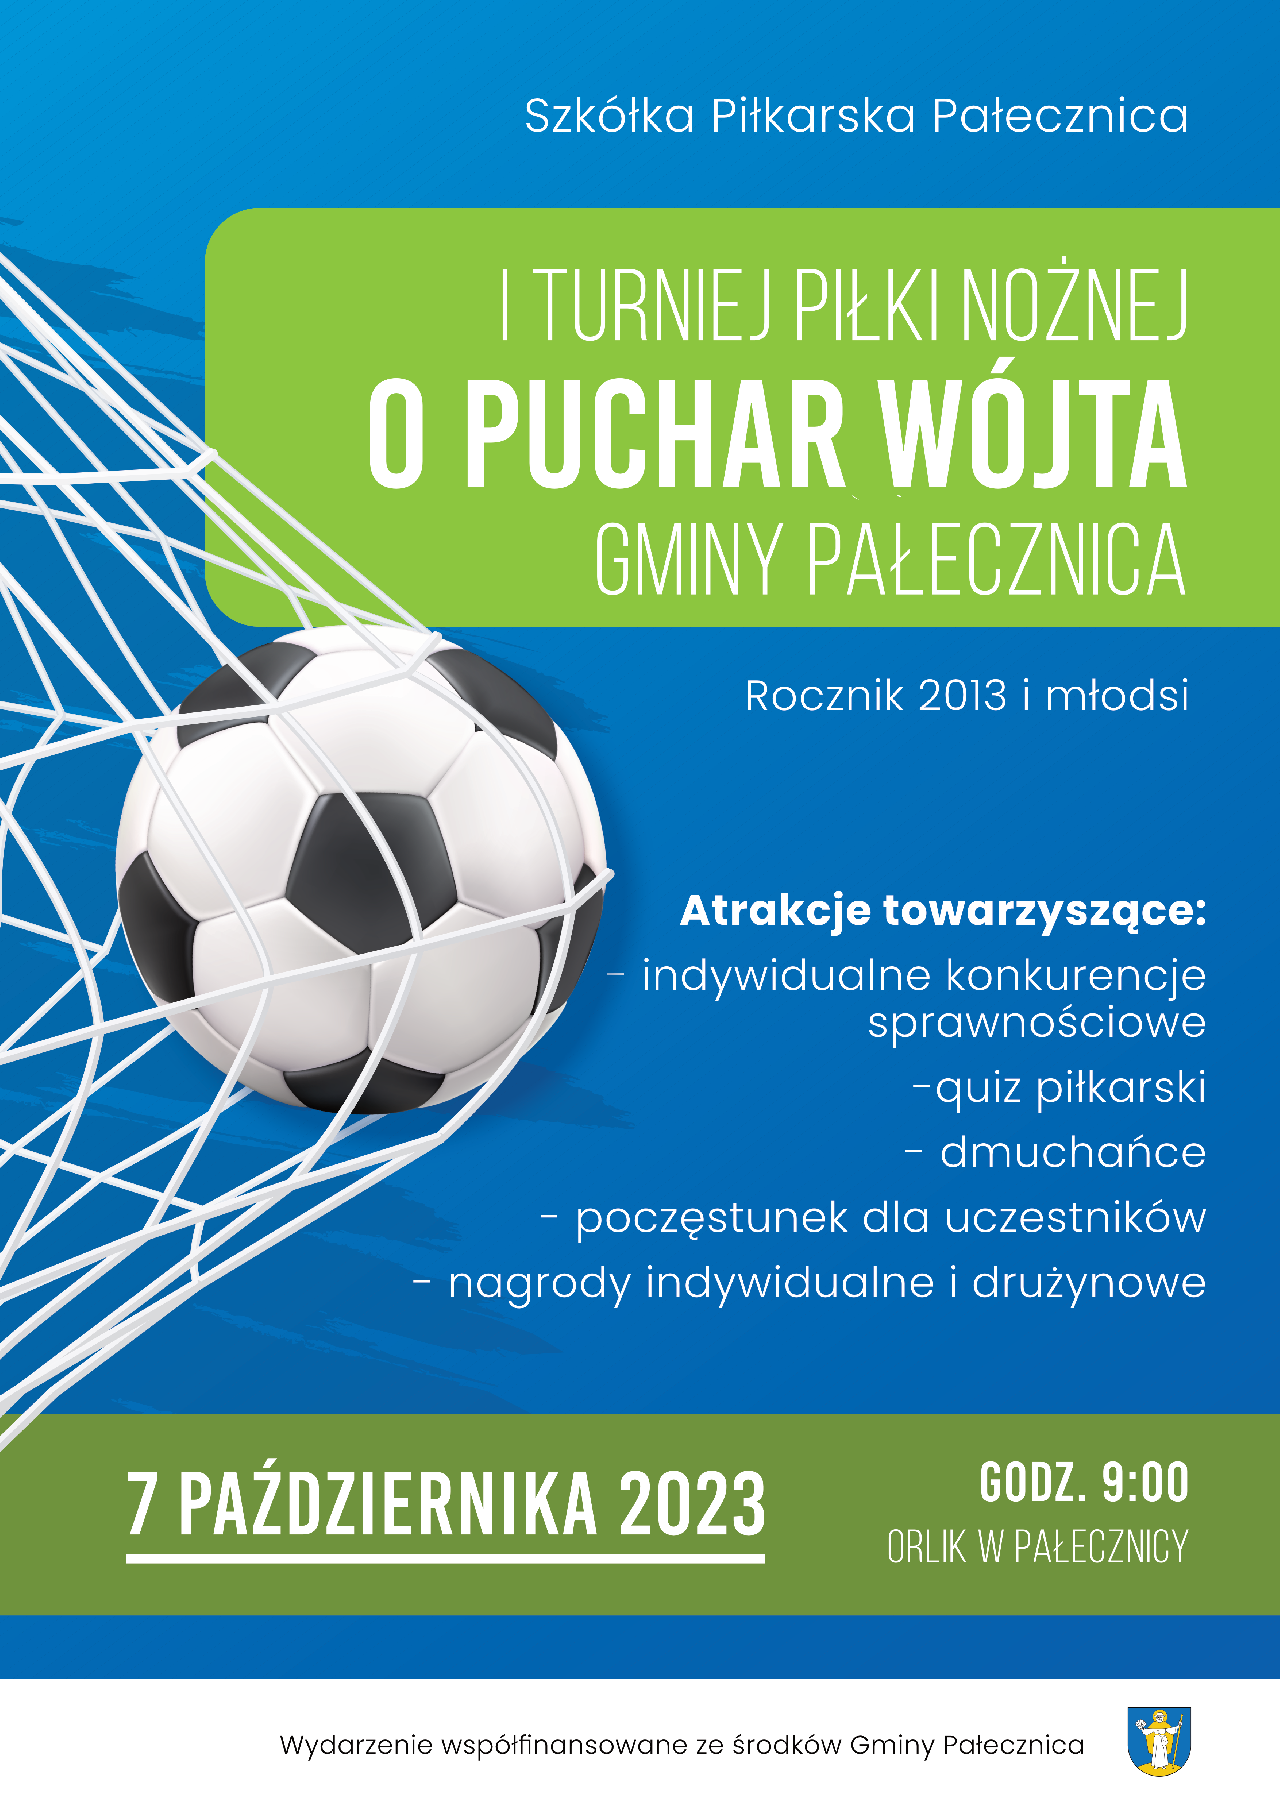 Plakat promujący turniej piłkarski